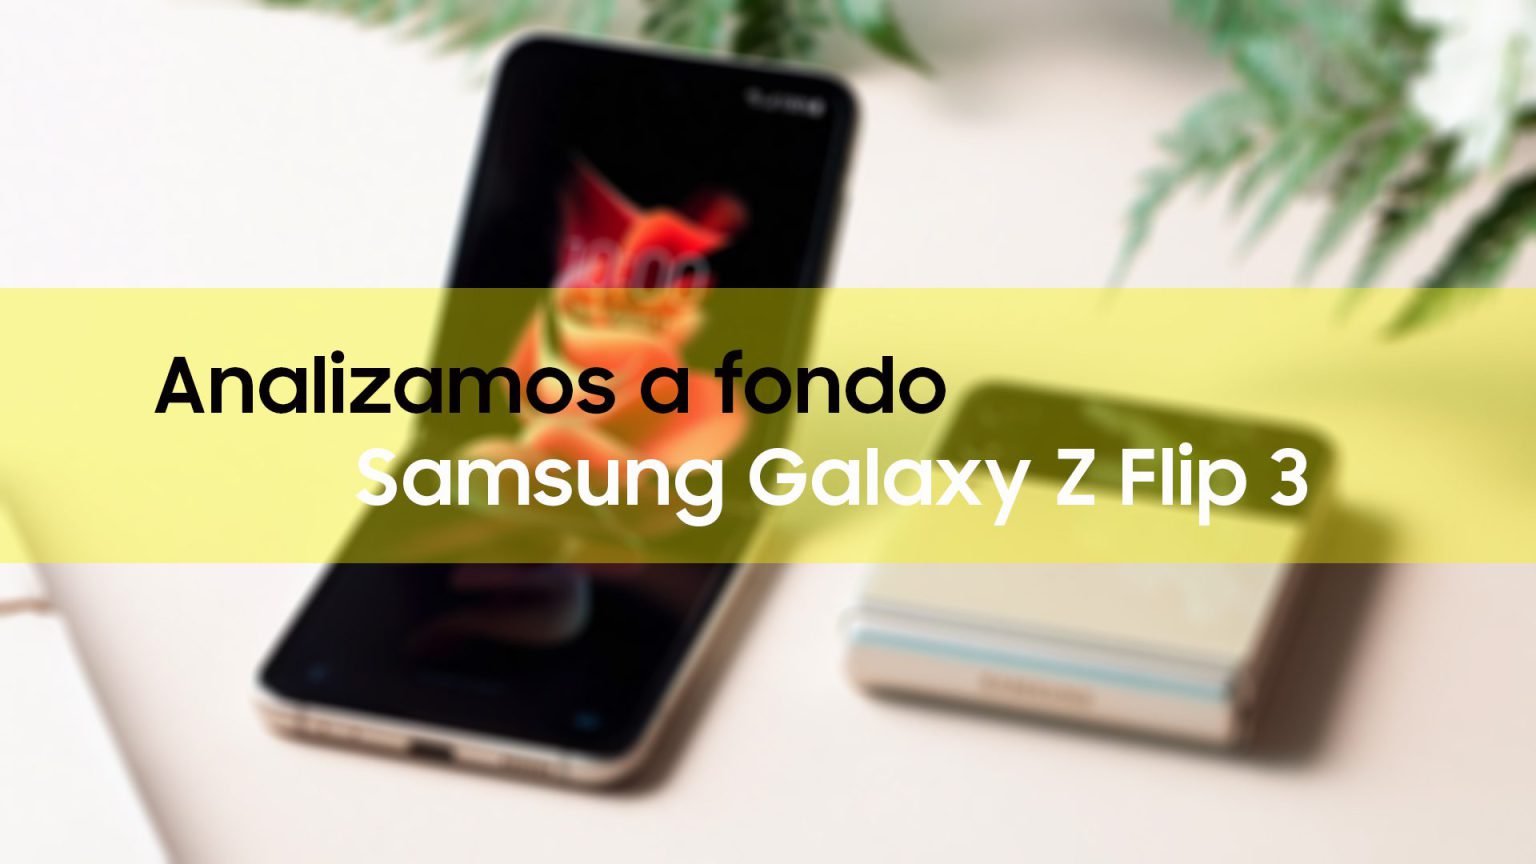 Galaxy Z Flip 3 - A fondo